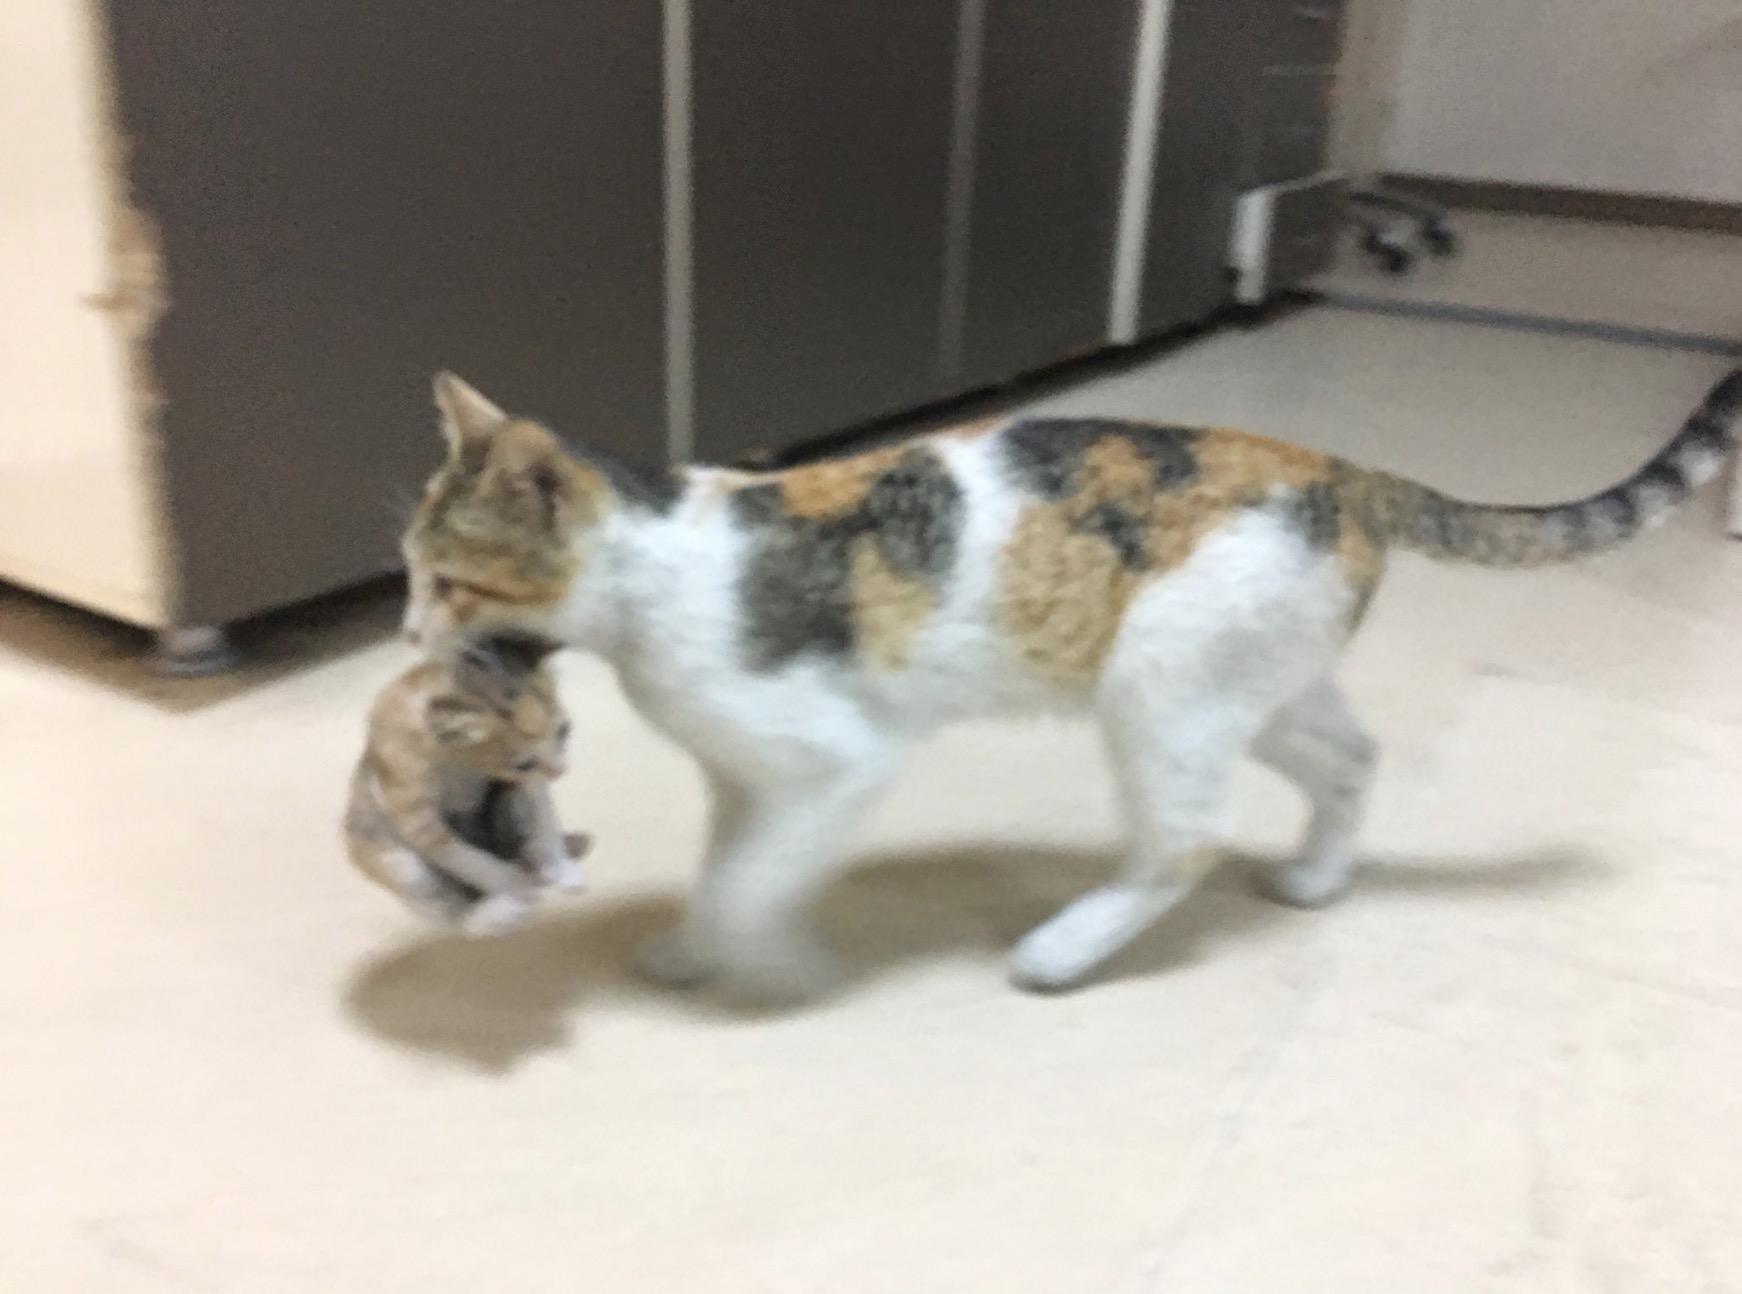 sajagempak.com - Kisah Sebenar Ibu Kucing Bawa Anak Ke Hospital Seolah-olah Meminta Pertolongan